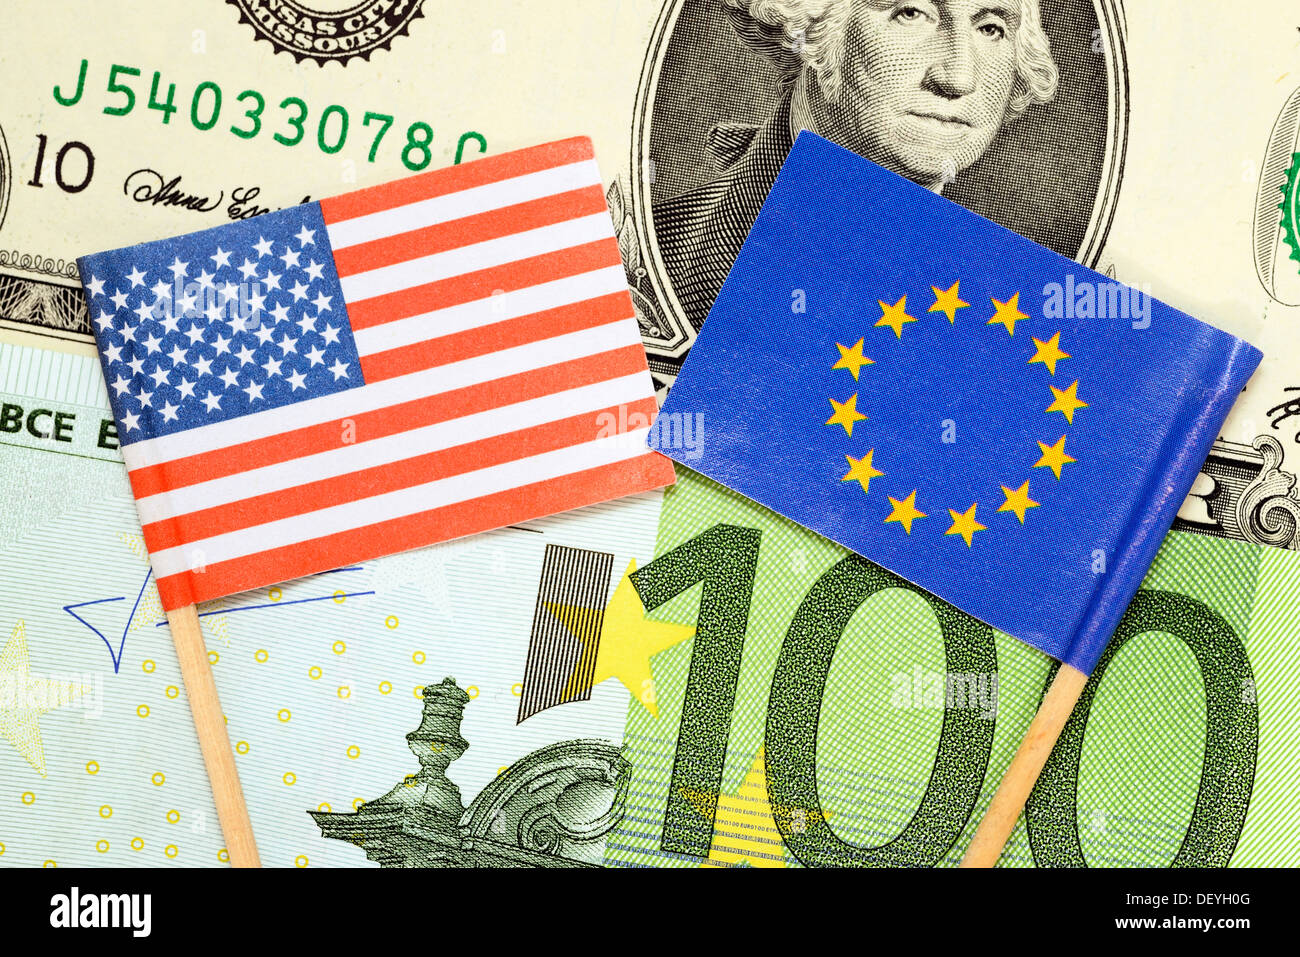 Drapeaux des USA et l'UE sur les dollars et Euros, photo symbolique zone de commerce extérieur entre les USA et l'UE Banque D'Images